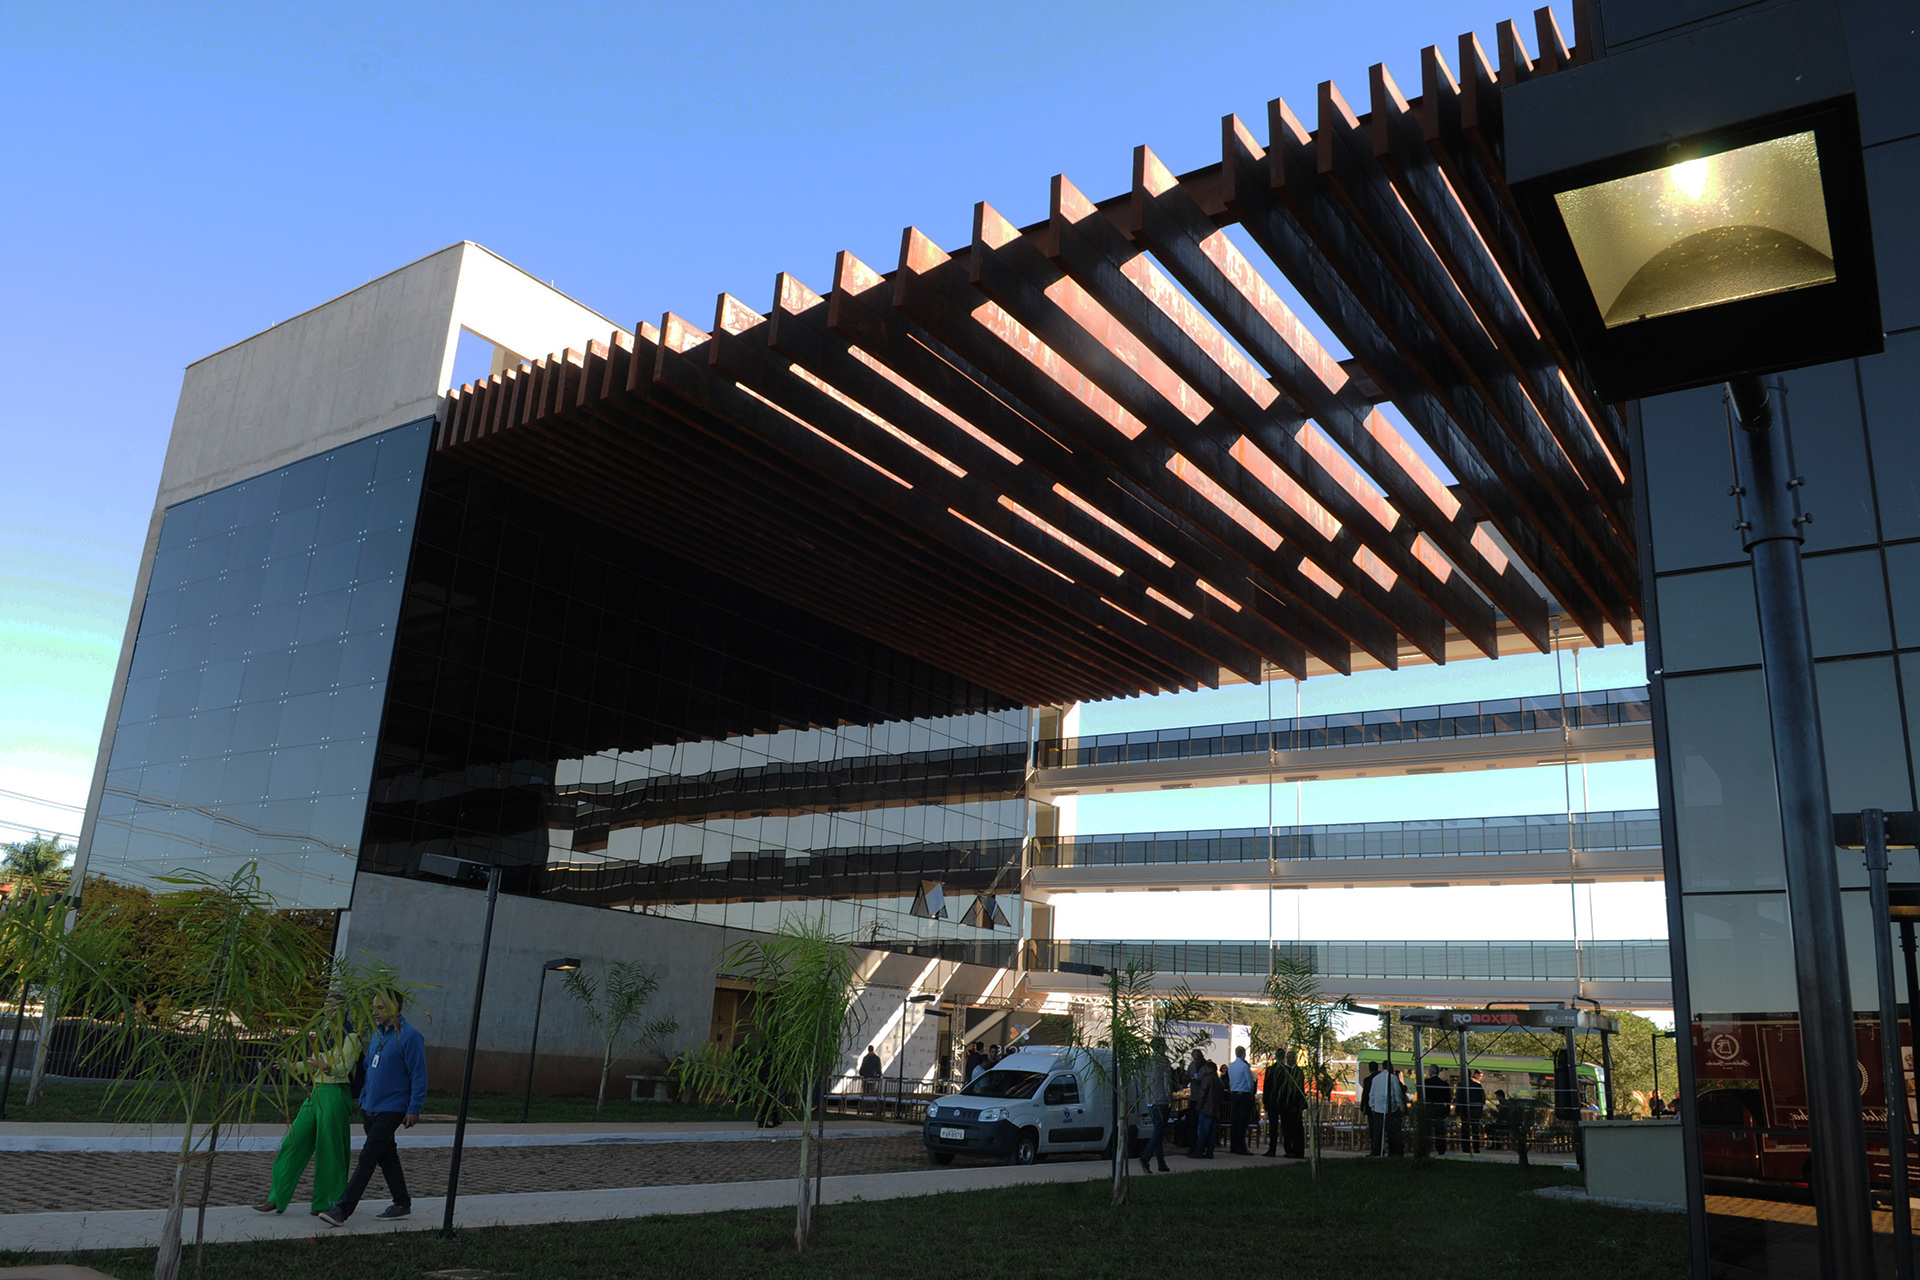 Centro de inovação e tecnologia, o Biotic — Parque Tecnológico de Brasília pretende proporcionar um novo pilar econômico para o Distrito Federal.